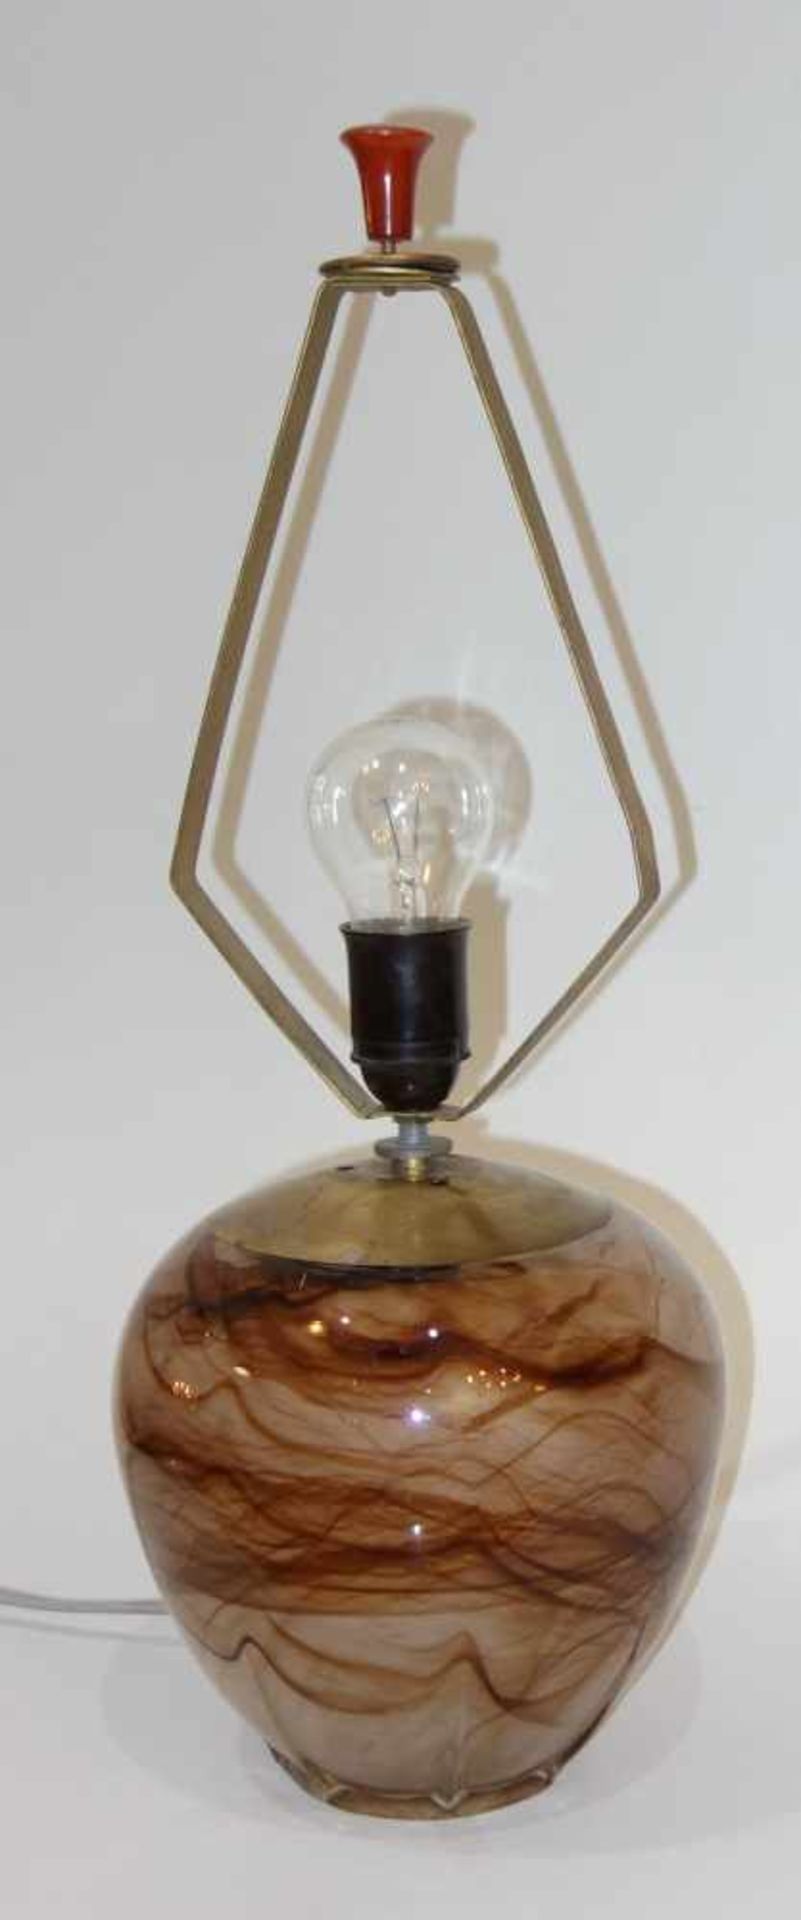 Tischlampe, 30/40er JahreGlaskorpus, ohne Schirm, Gesamt-H. 51,5cm, Elektrifizierung n.gepr.